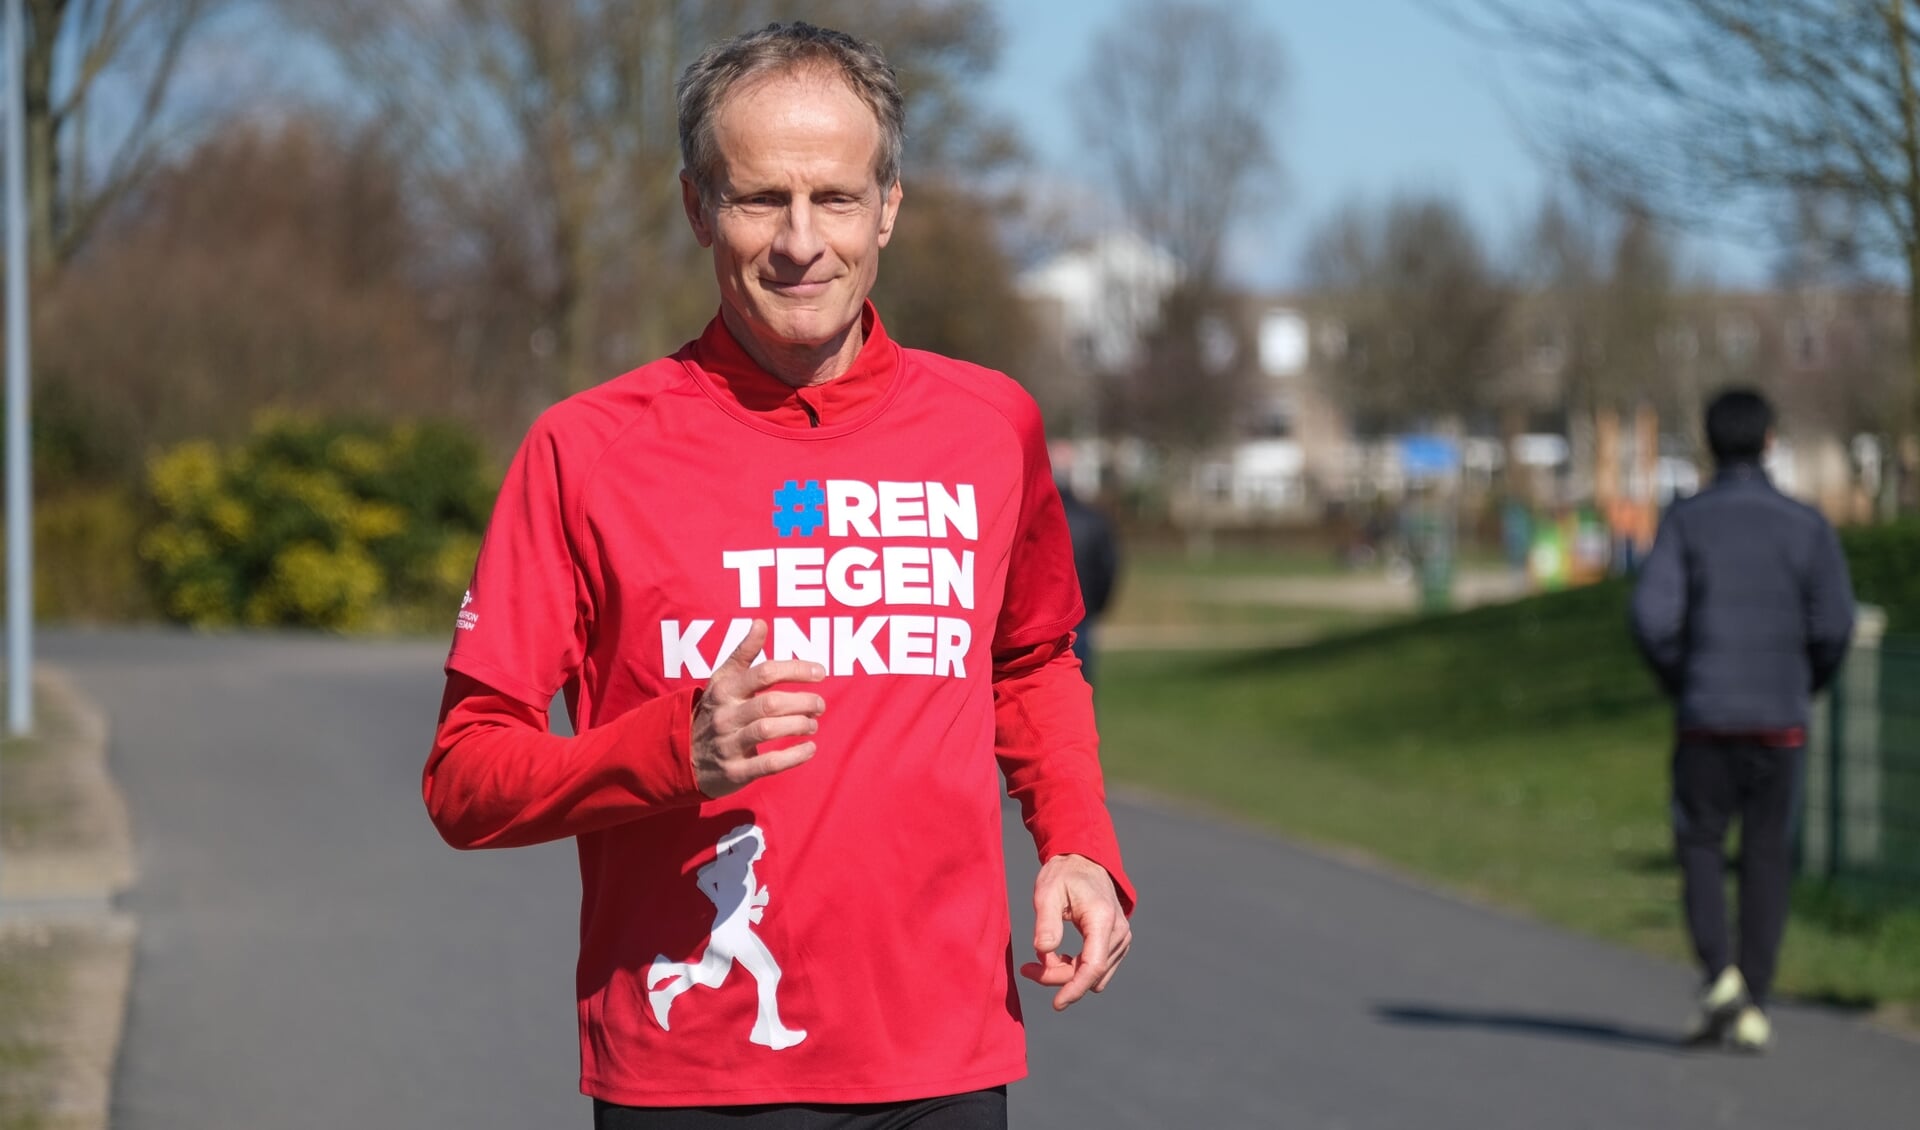 Frank van Diemen: ‘Ik heb nog nooit een marathon gelopen, maar hoop dat zondag 11 april vanaf mijn huis in Toolenburg toch te gaan doen.’